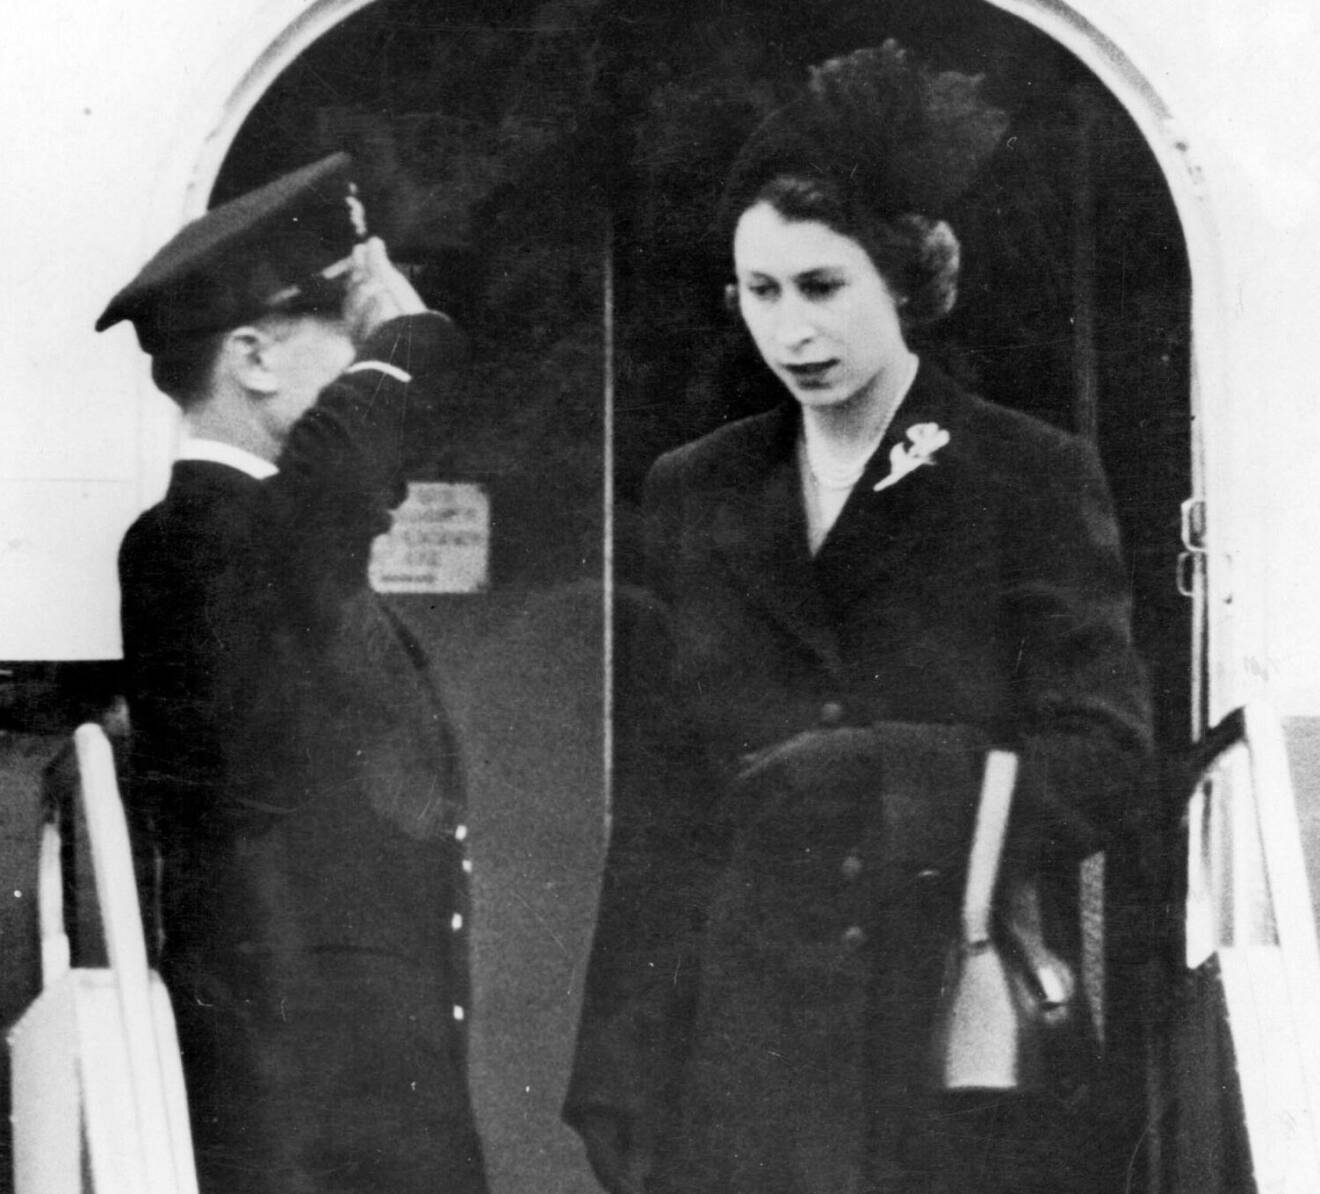 Drottning Elizabeths första steg på brittisk mark som drottning 1952